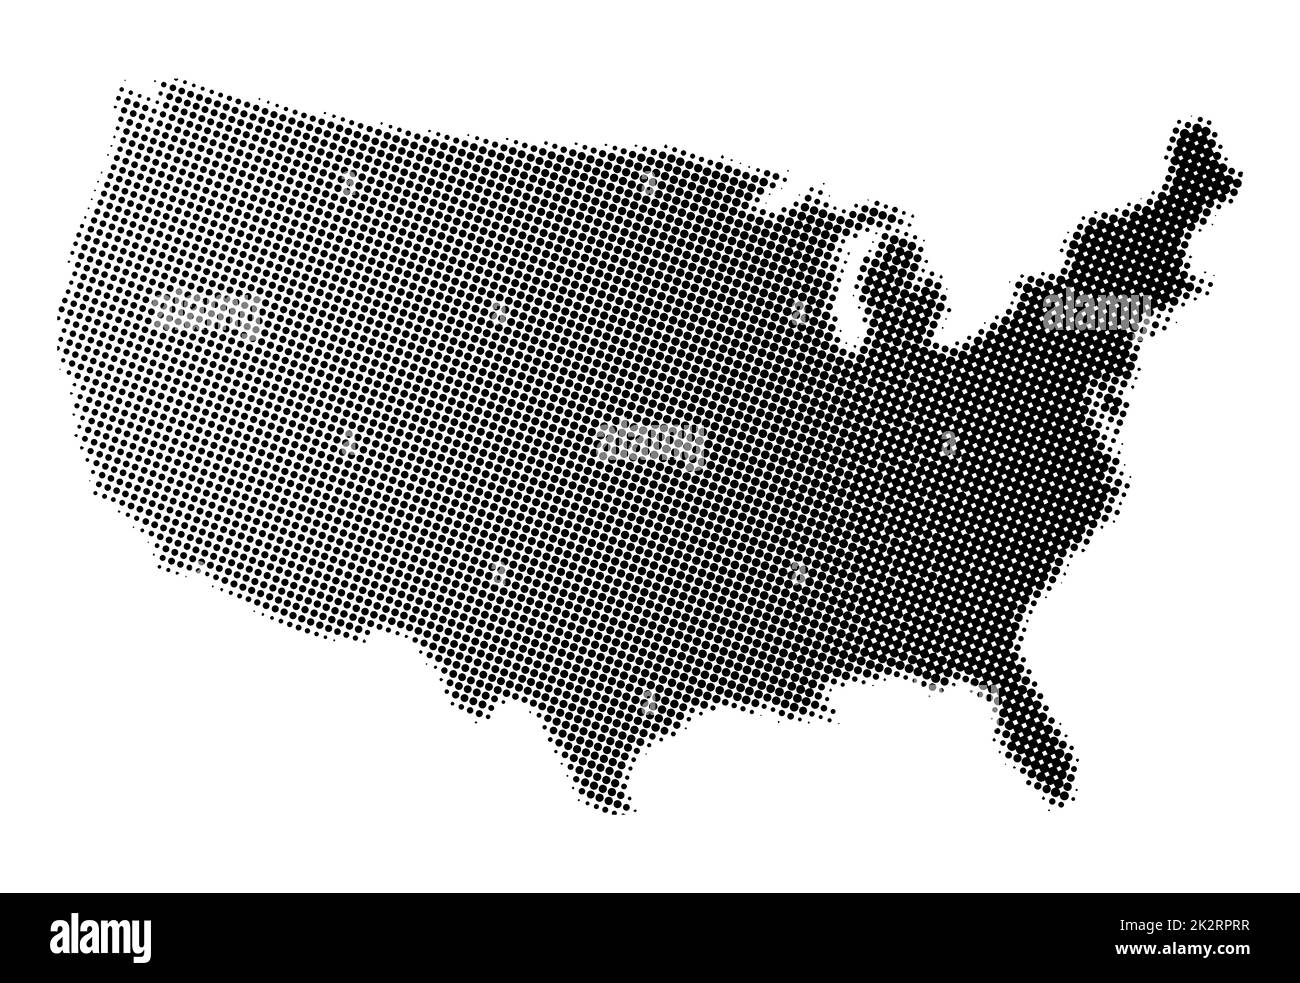 Mappa degli Stati Uniti d'America in mezzitoni bianchi e neri Foto Stock